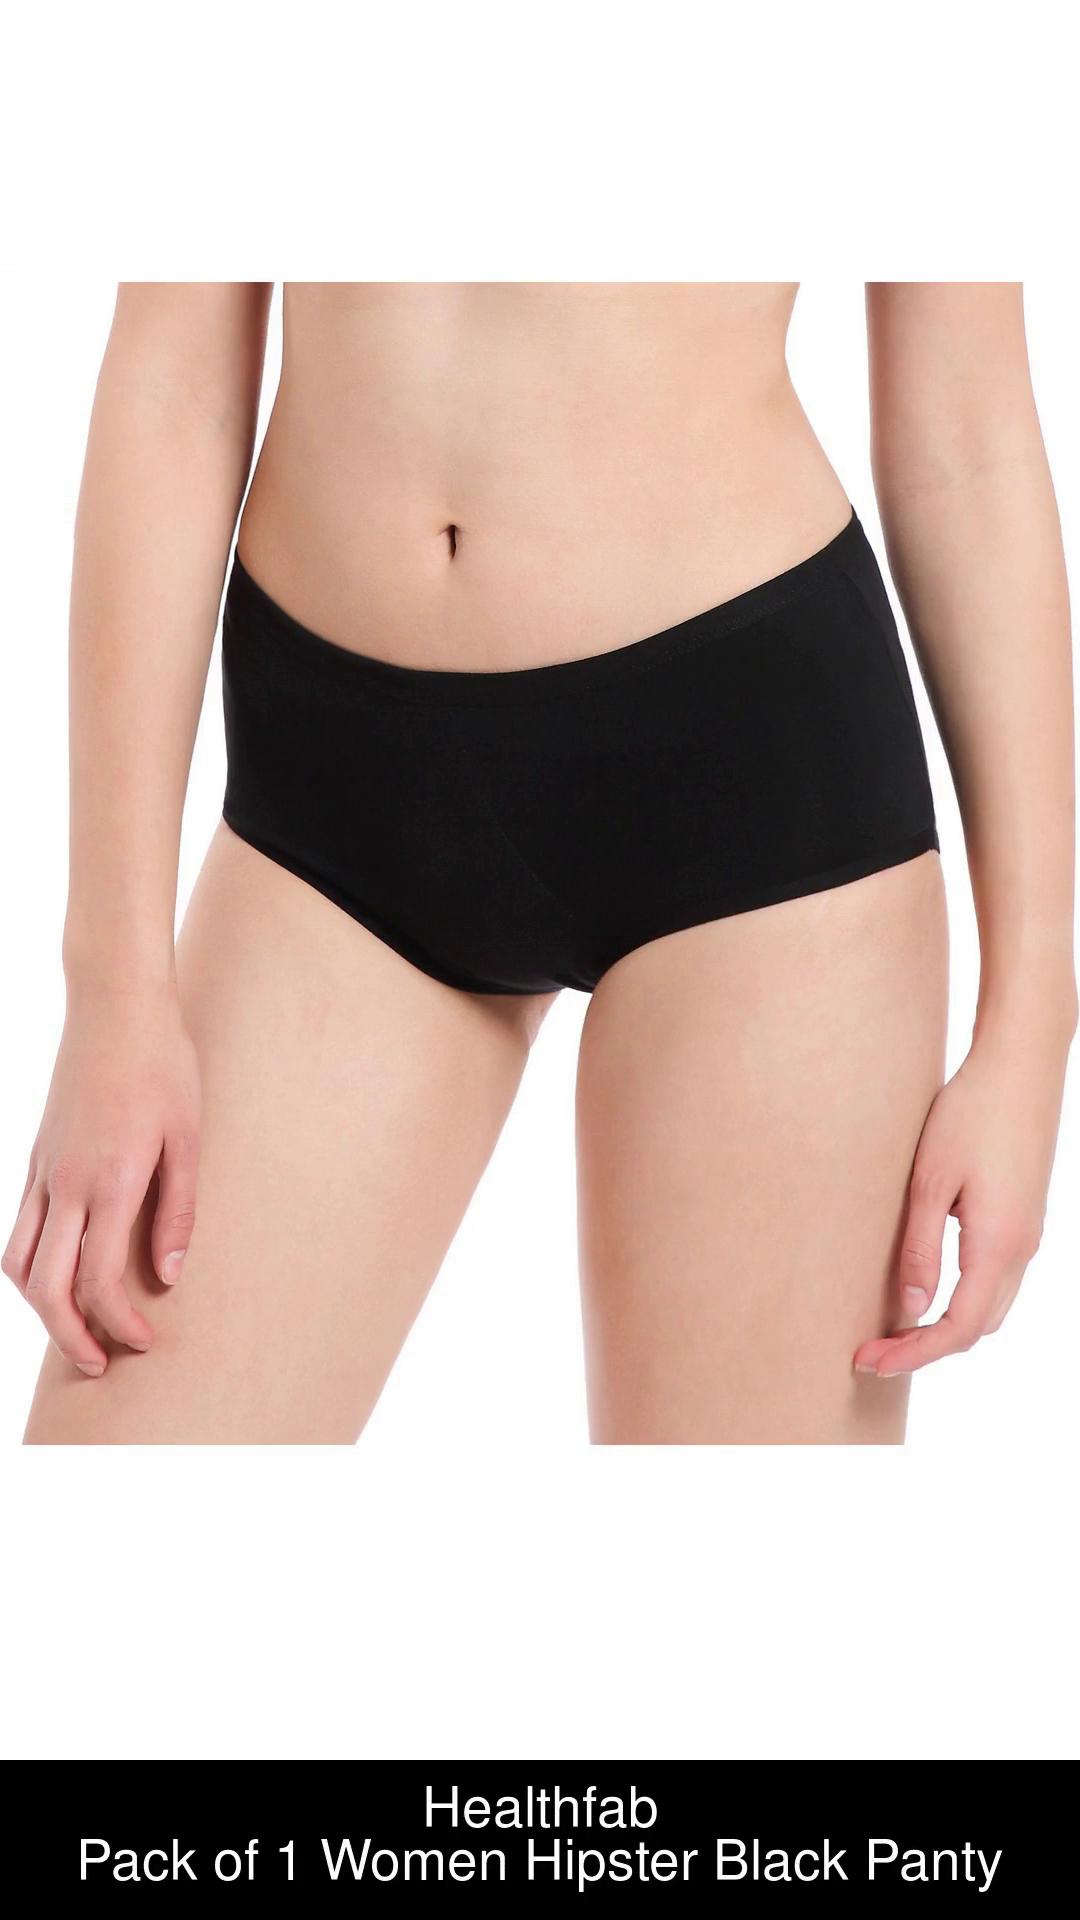 CODE RED Period Panties With Pocket Period Panties Menstrual Leakproof  Knickers Underwear-Black XL